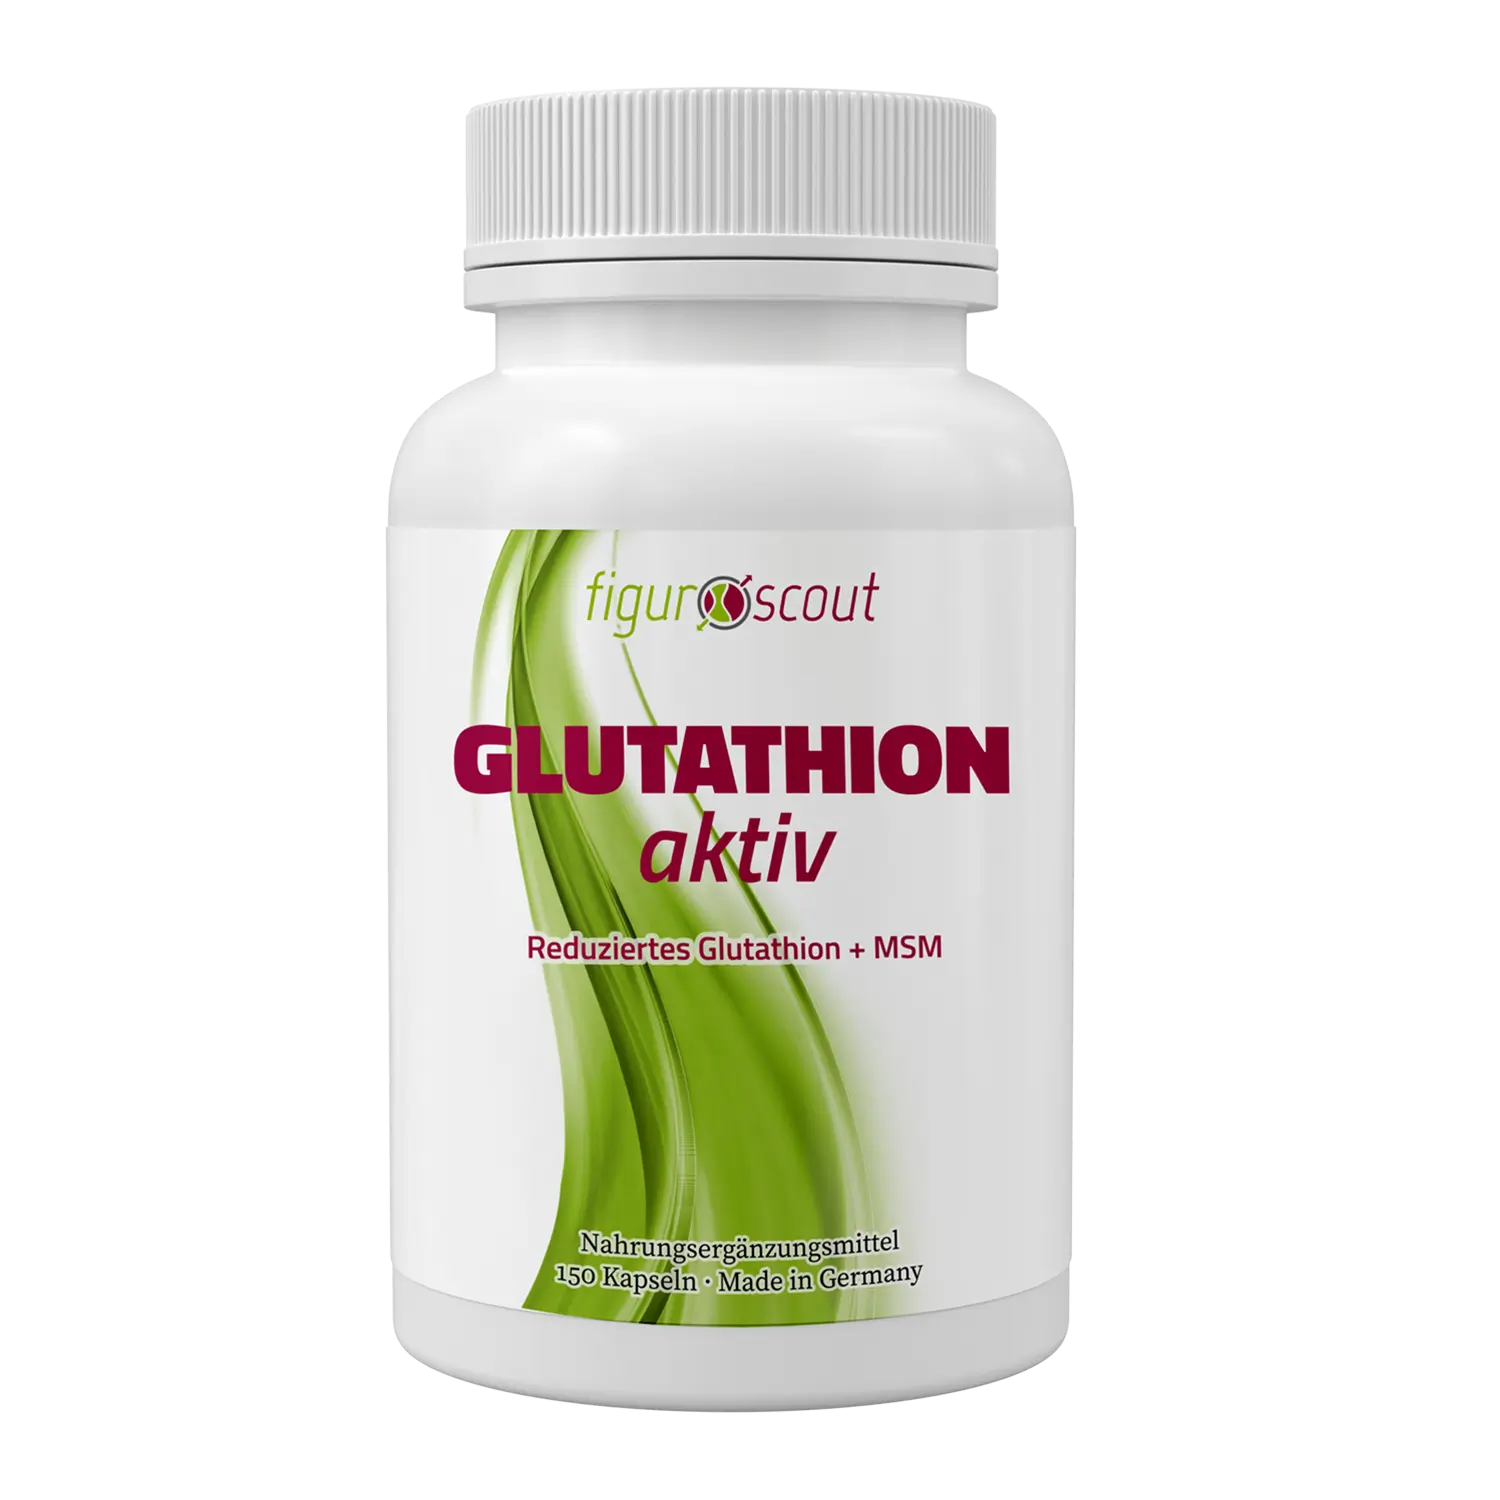 Glutathion aktiv